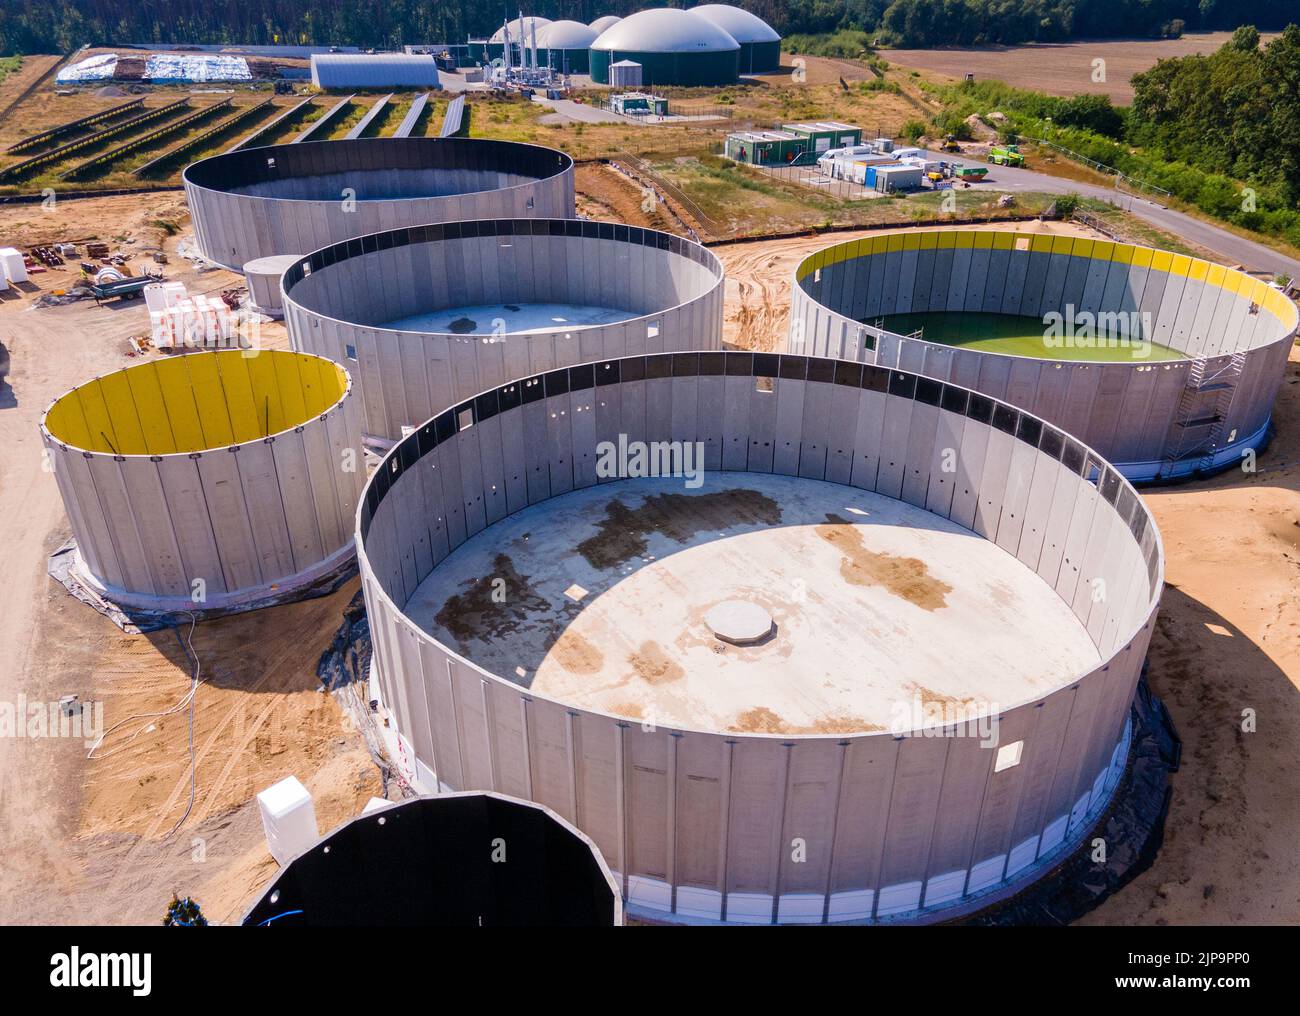 Torgelow, Alemania. 16th de Ago de 2022. Los primeros tanques de gas todavía en construcción para la futura planta de biogás. (Fotografía aérea tomada con un zumbido). La planta abastecerá a 15.000 habitantes de la ciudad de Torgelow. La planta de la empresa Mele Biogas, que hasta ahora consta de seis tanques de almacenamiento, se ampliará para duplicar su capacidad en otoño de 2023. Según la Asociación Estatal de Mecklemburgo-Pomerania Occidental para la Energía Renovable, aquí se producirá un volumen de energía de más de 100 millones de kilovatios hora al año, que también se introducirá en la red de gas natural. Crédito: Jens/dpa/Alamy Live News Foto de stock